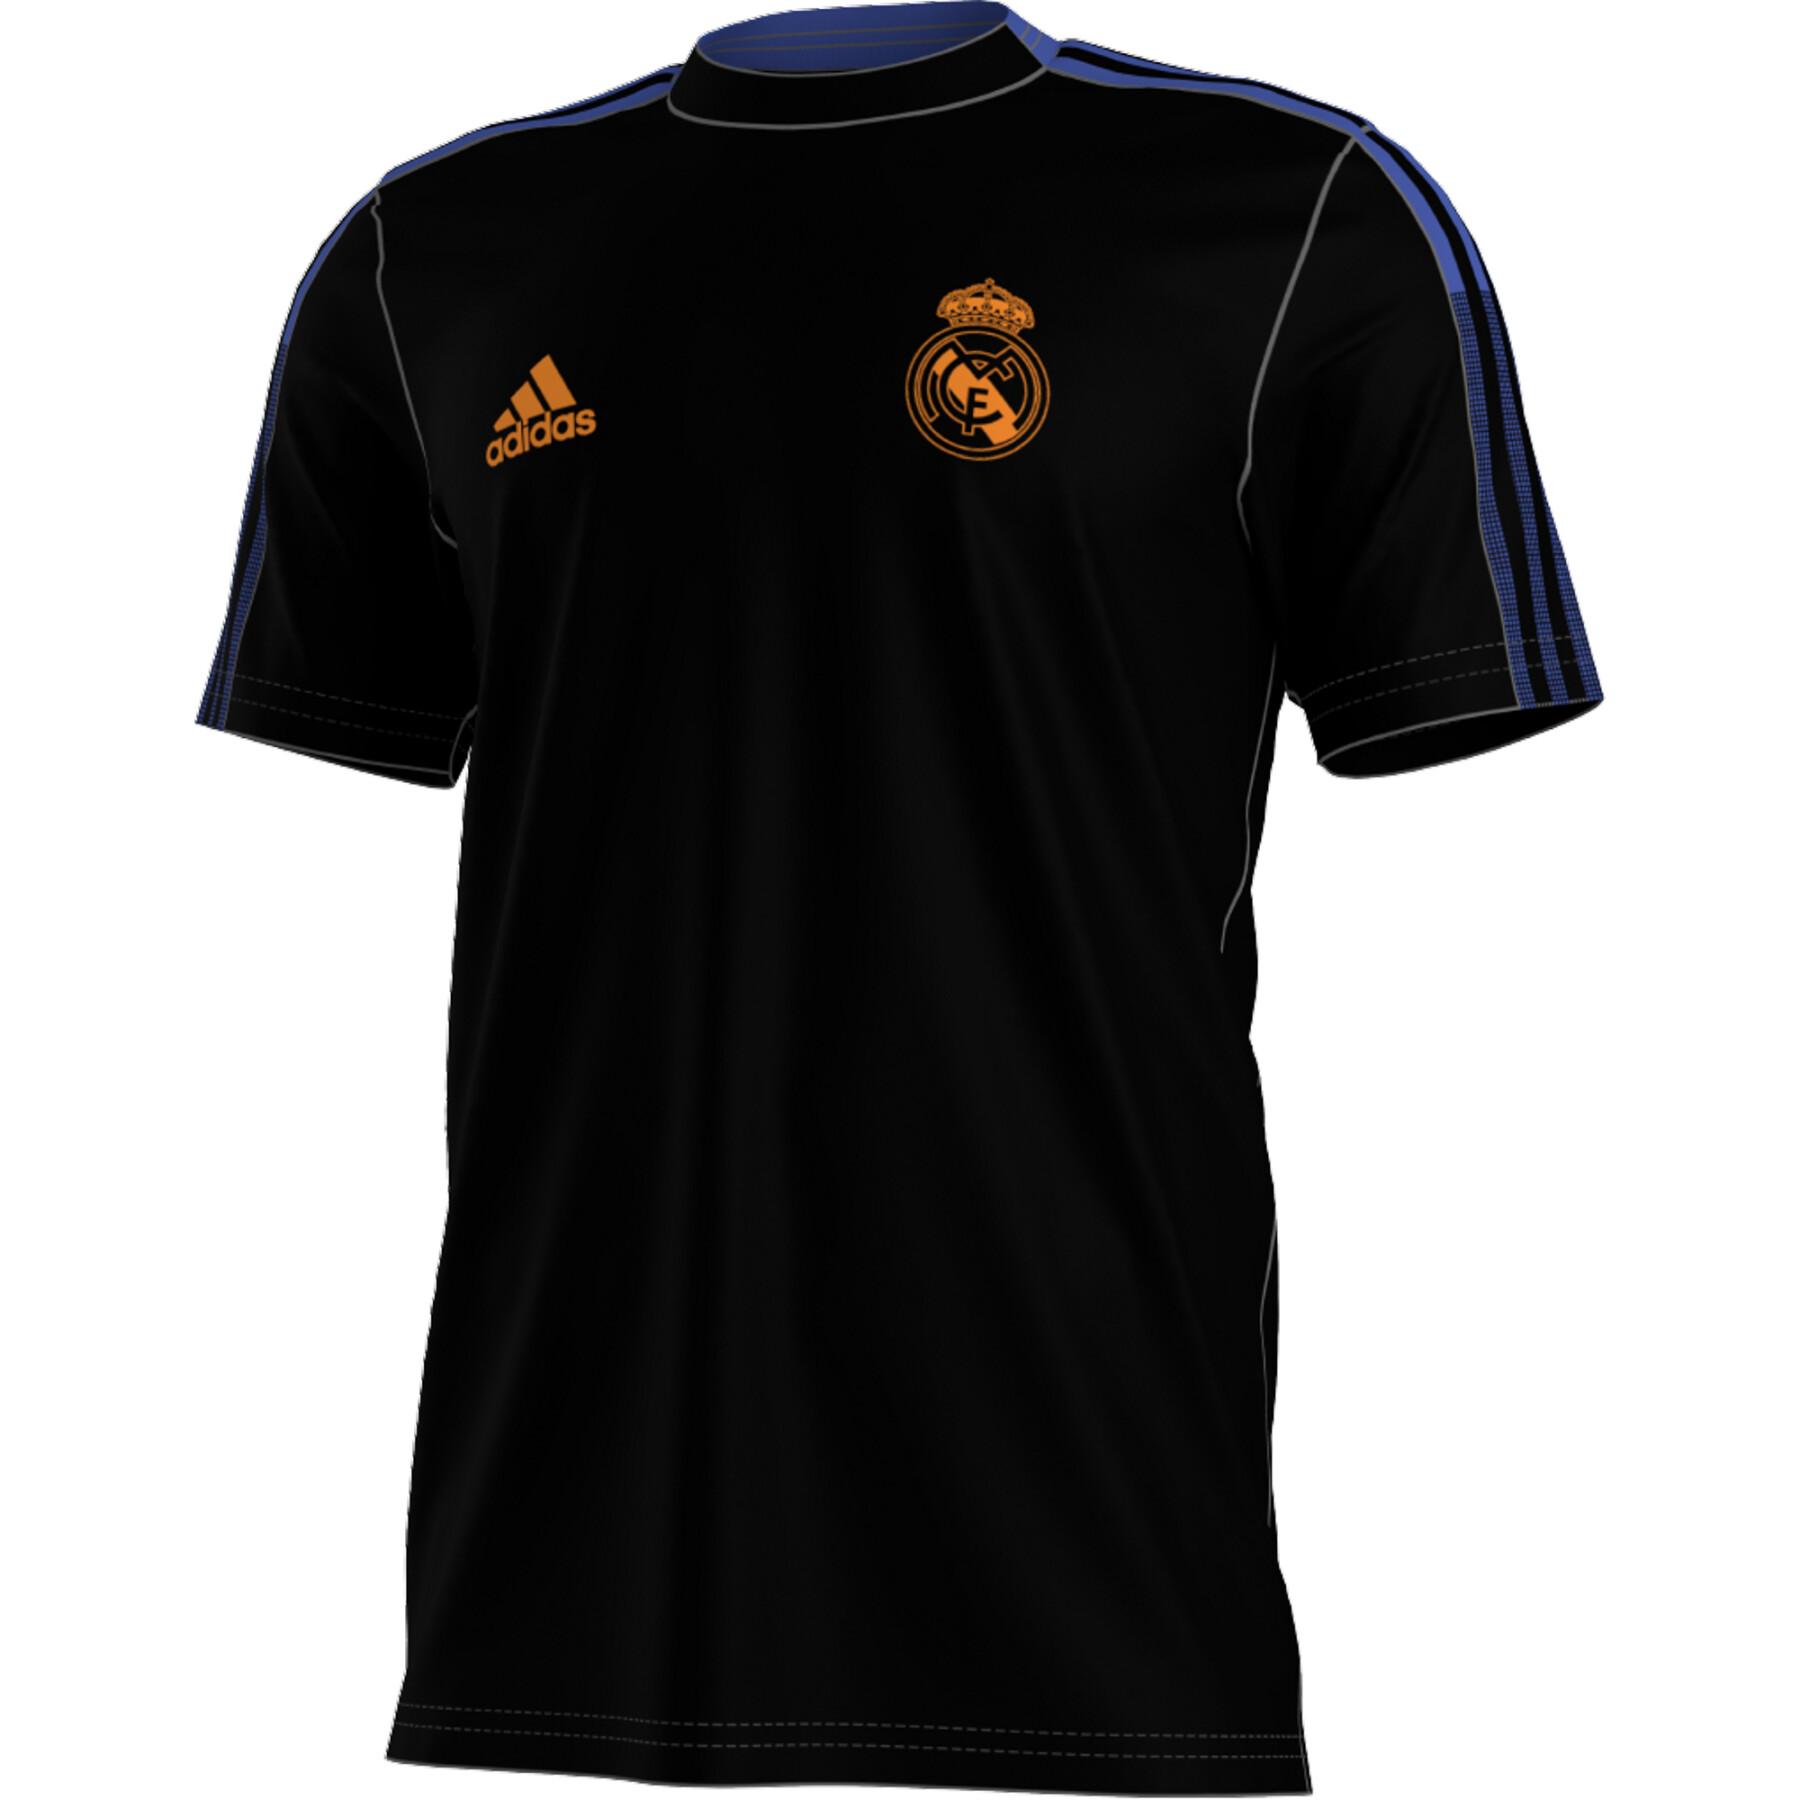 Child's T-shirt Real Madrid Tiro